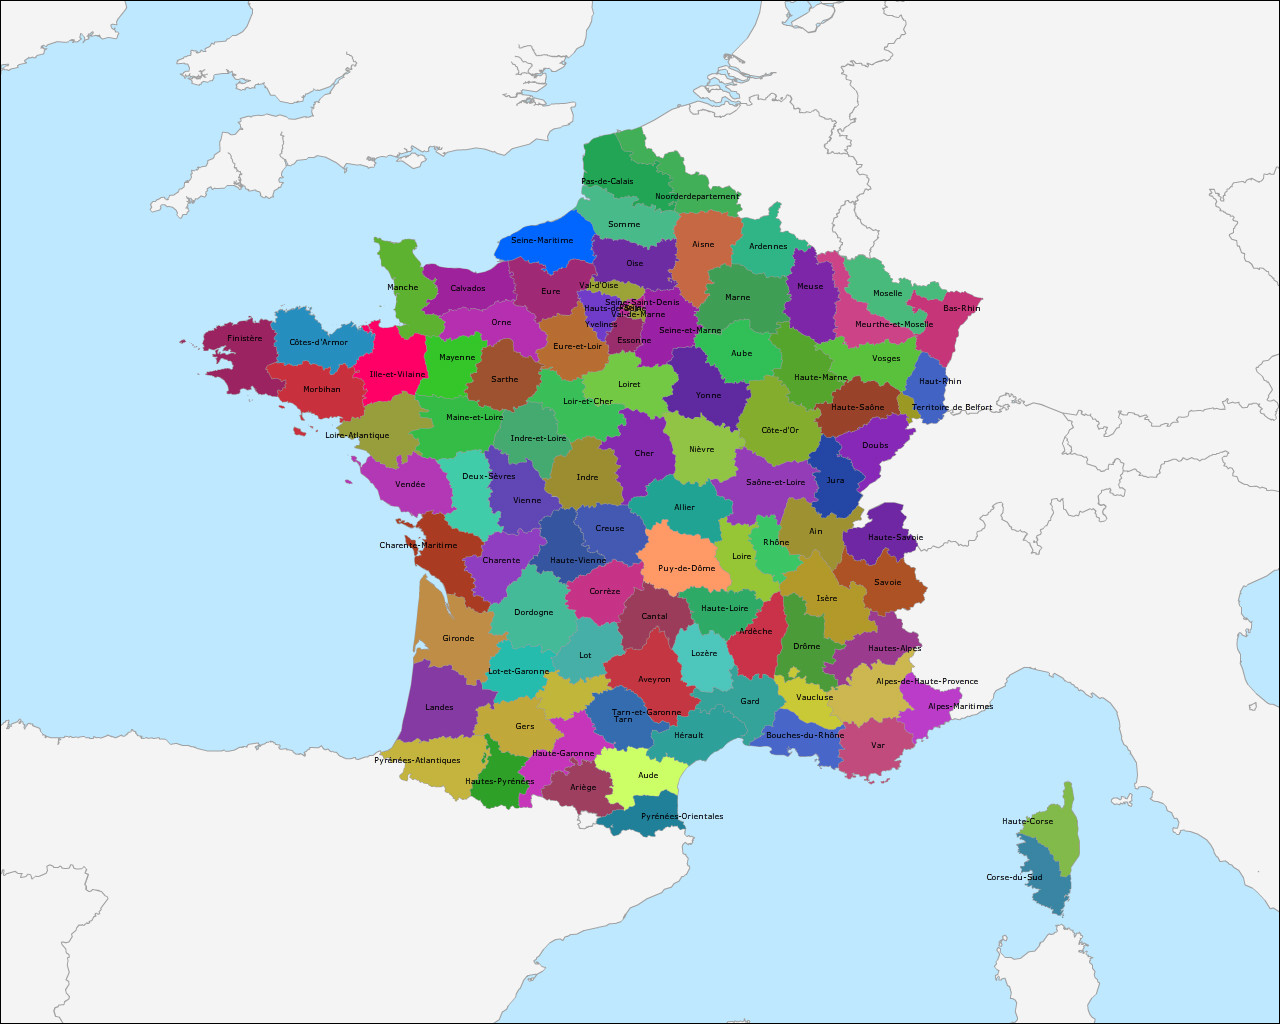 kas borstel karakter Topografie Departementen van Frankrijk | www.topomania.net